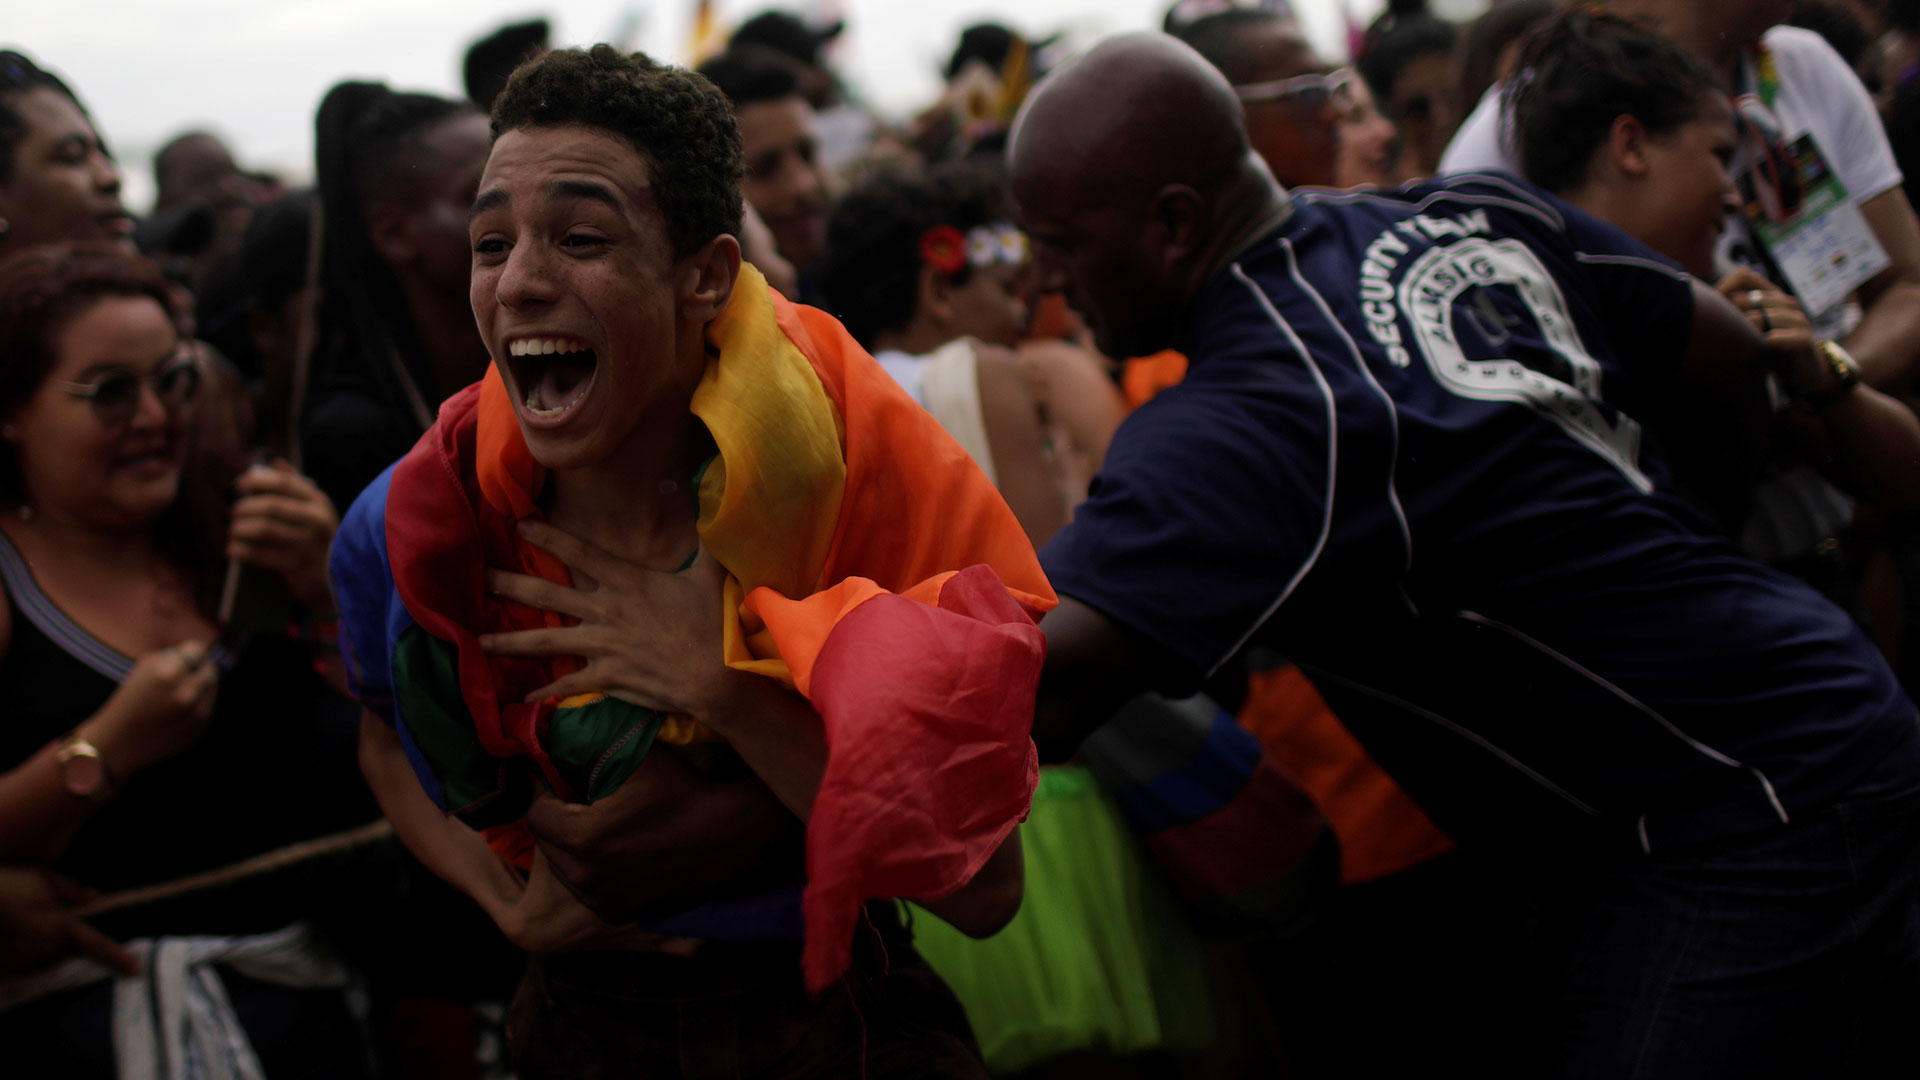 Las muertes violentas del colectivo LGTB en Brasil alcanzaron en 2017 su máximo histórico